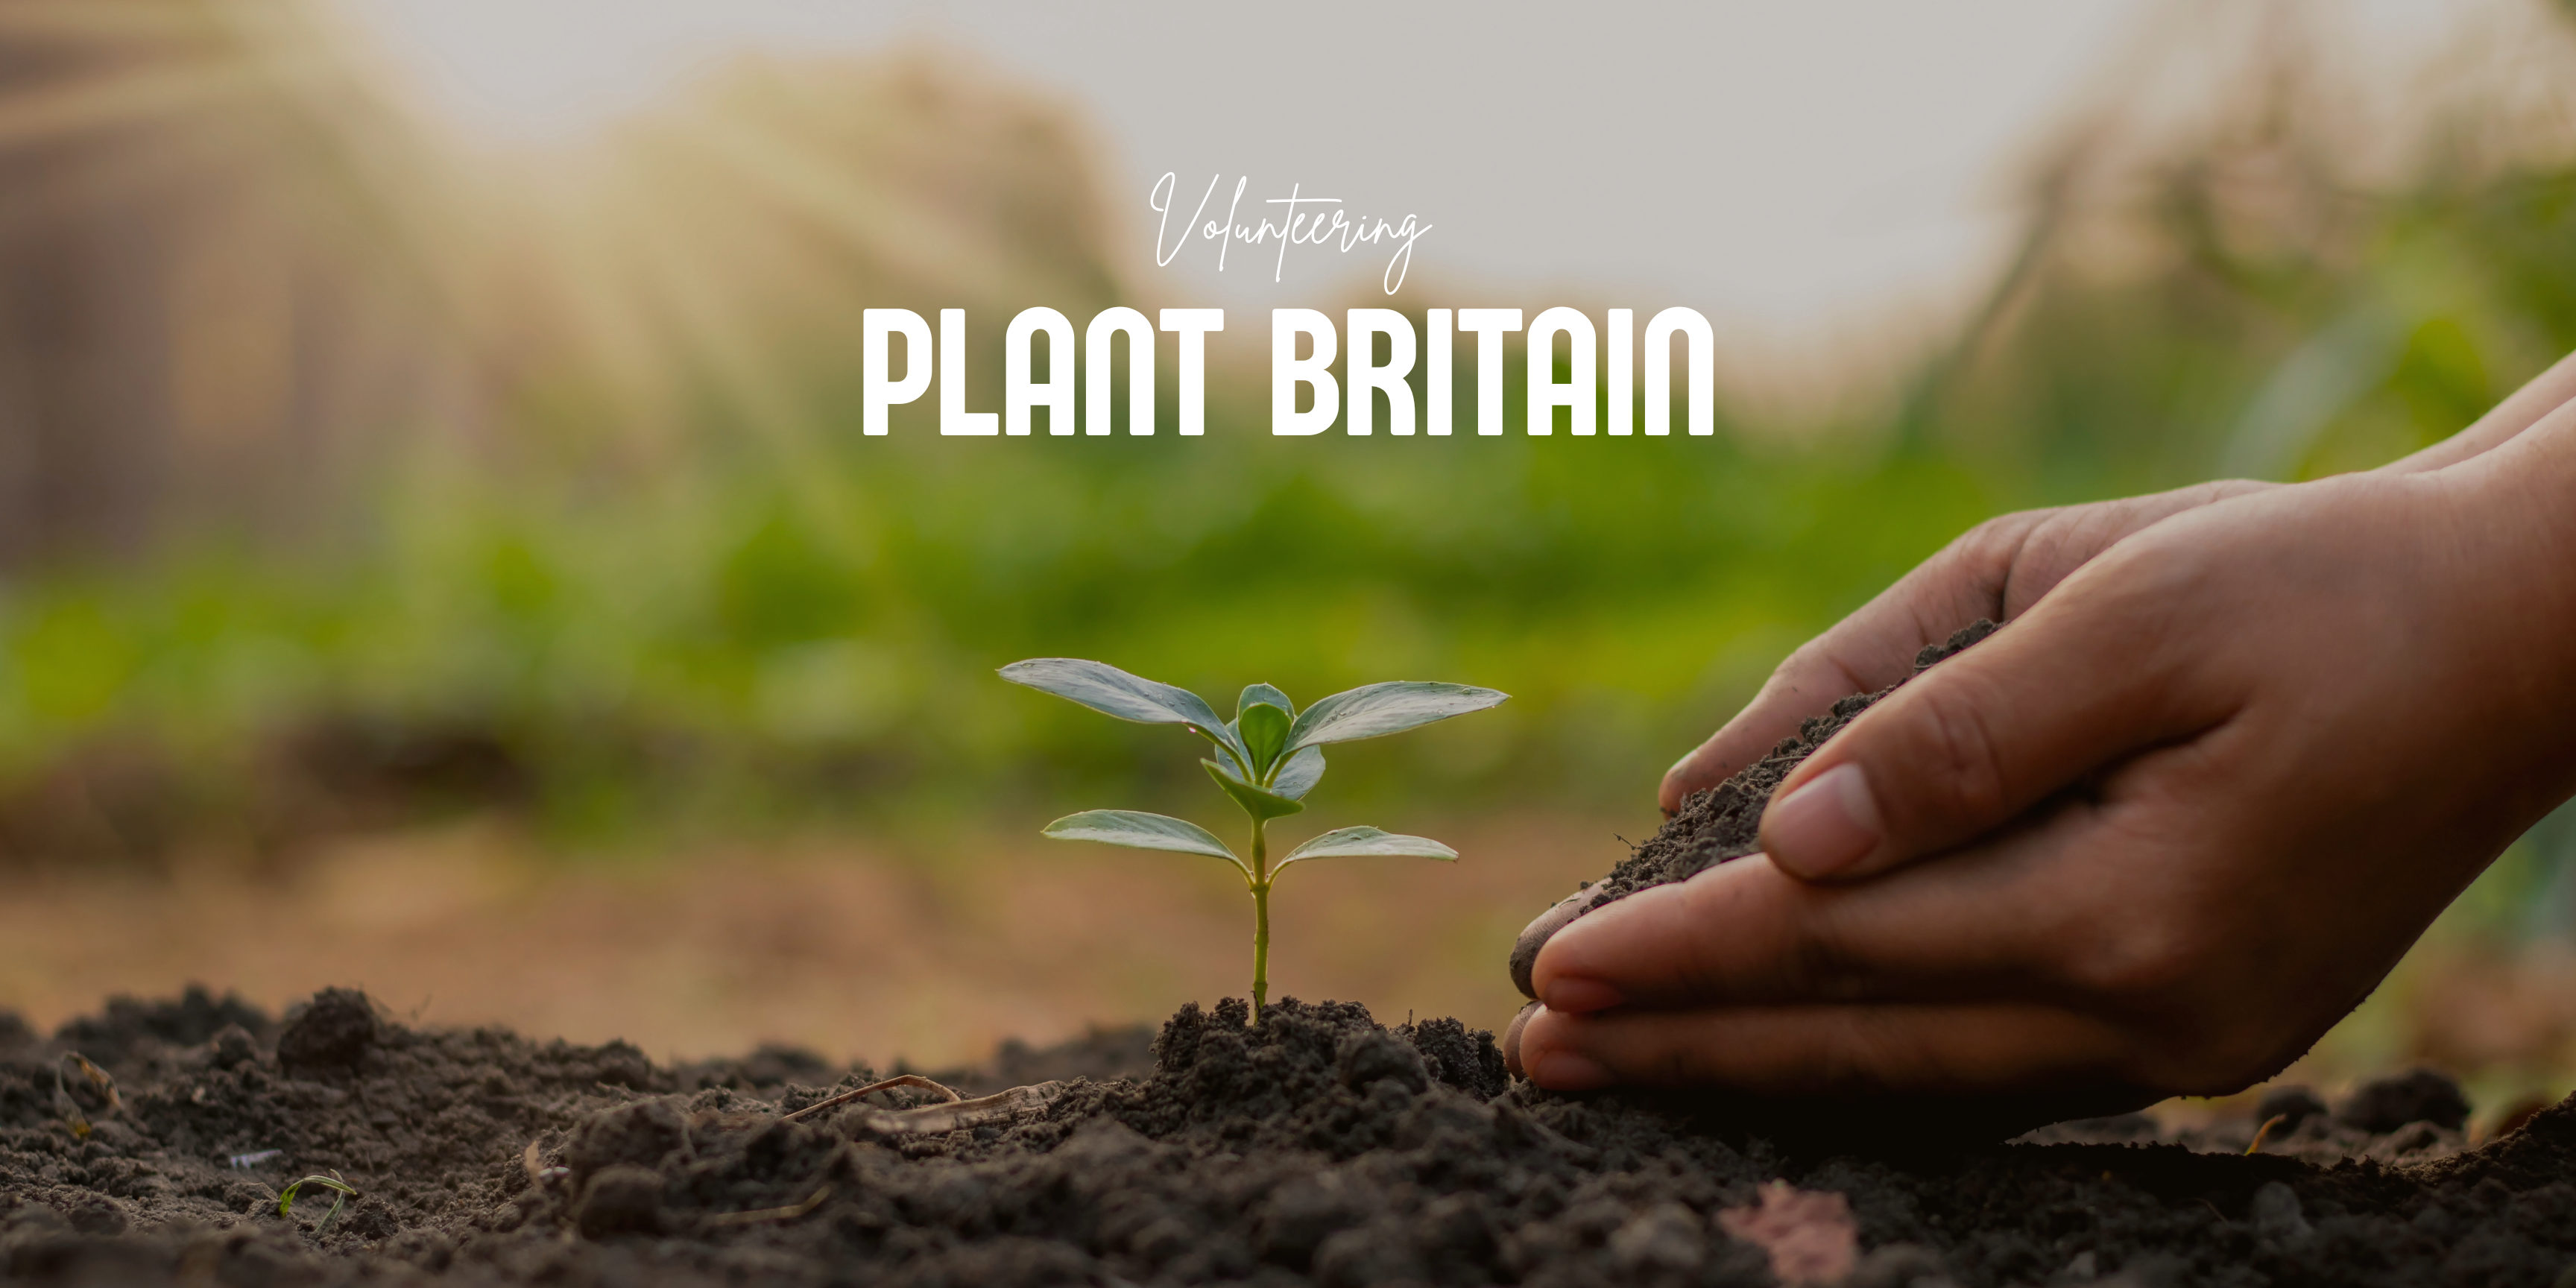 Plant Britain